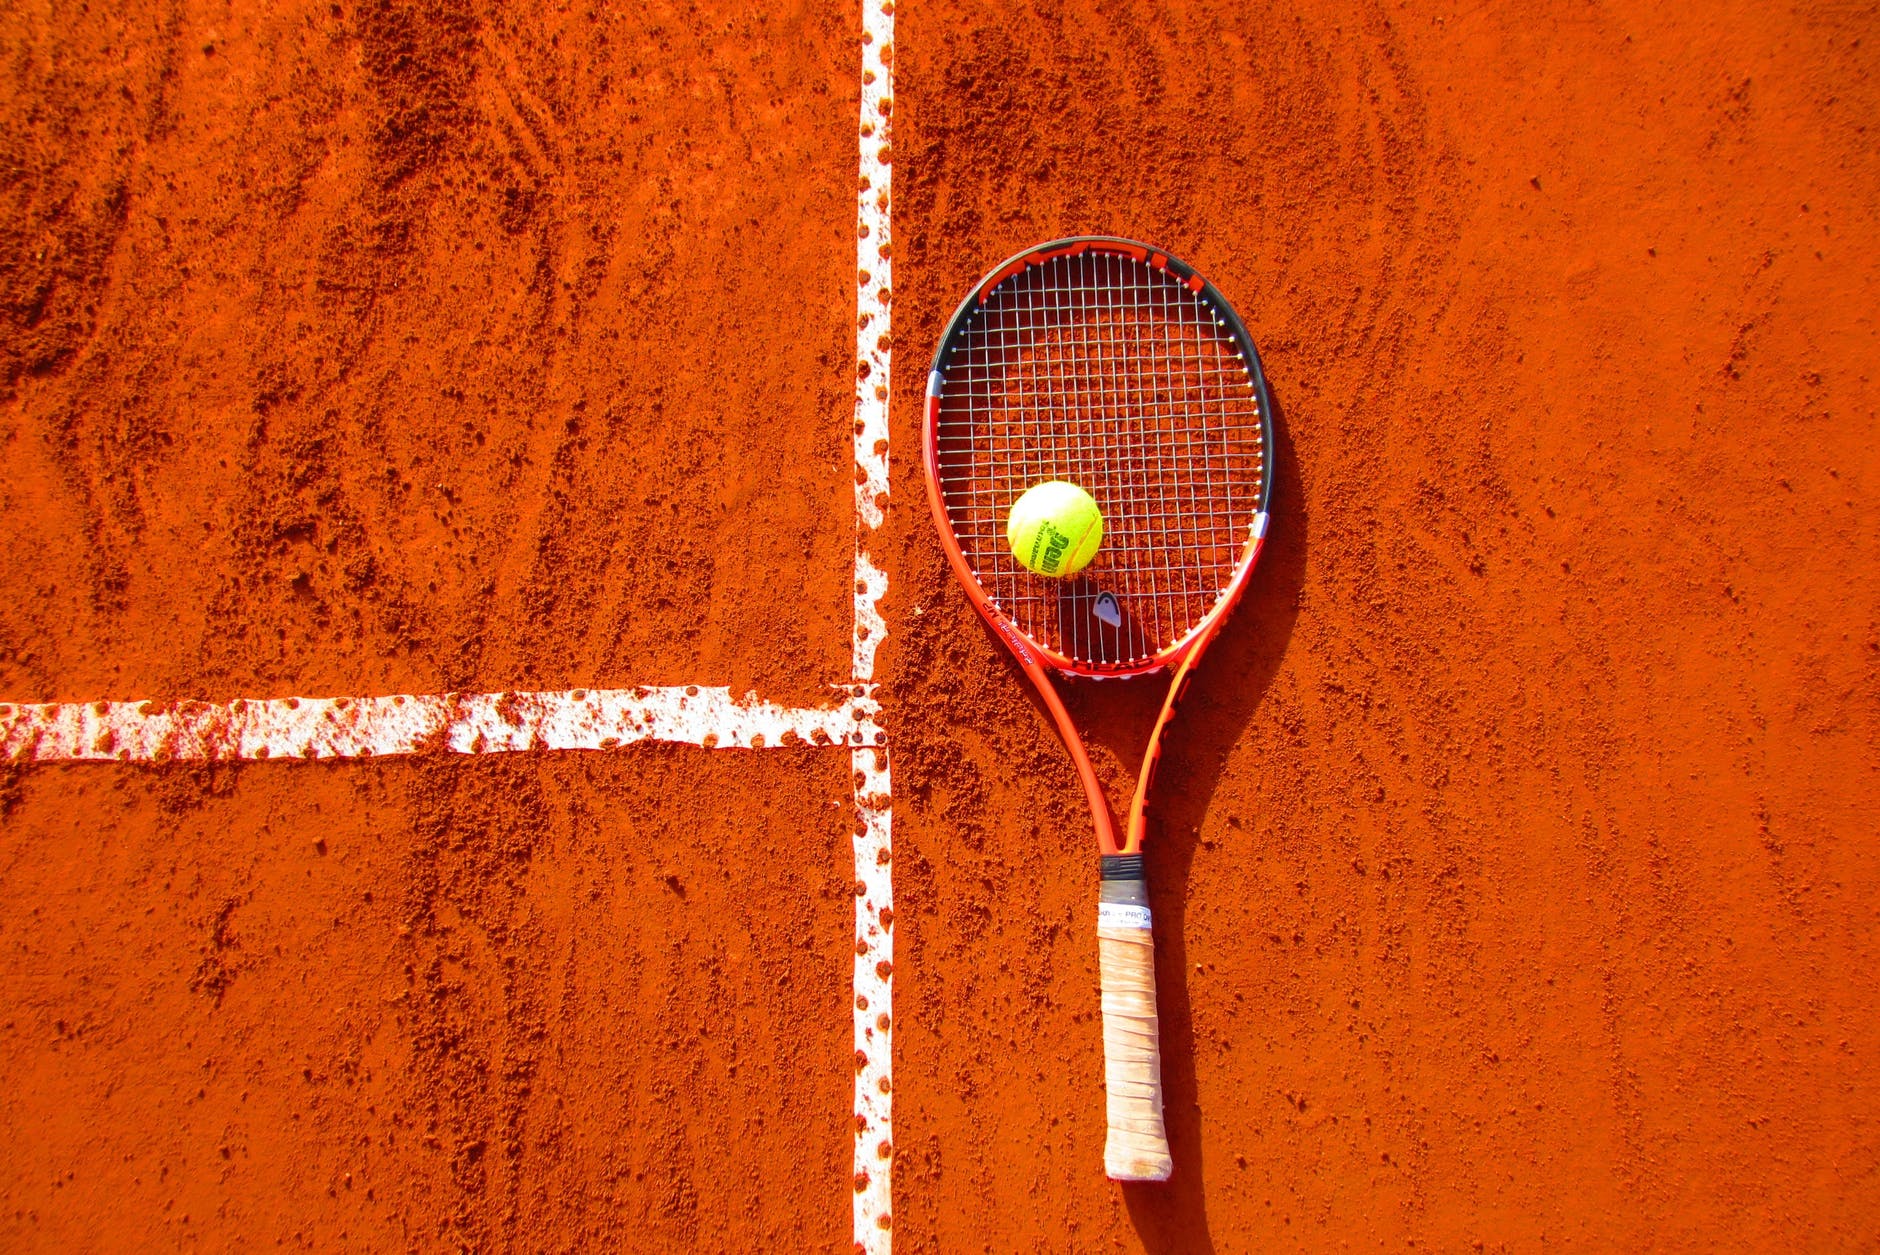 Easytools tennis sport framerate conversion solution